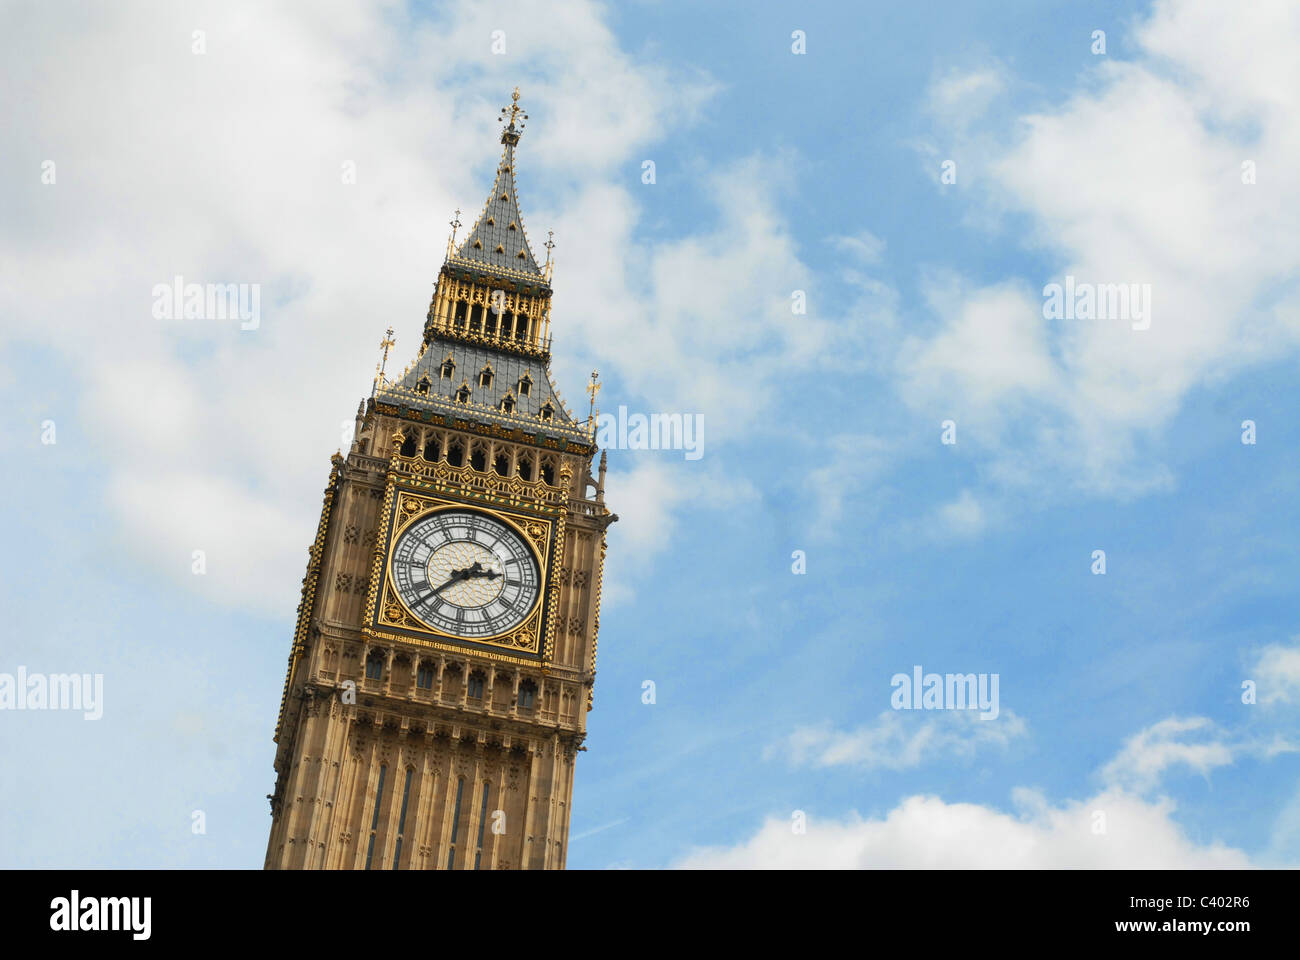 Dies ist ein Bild der Uhr von Big Ben in den Houses of Parliament, UK Stockfoto